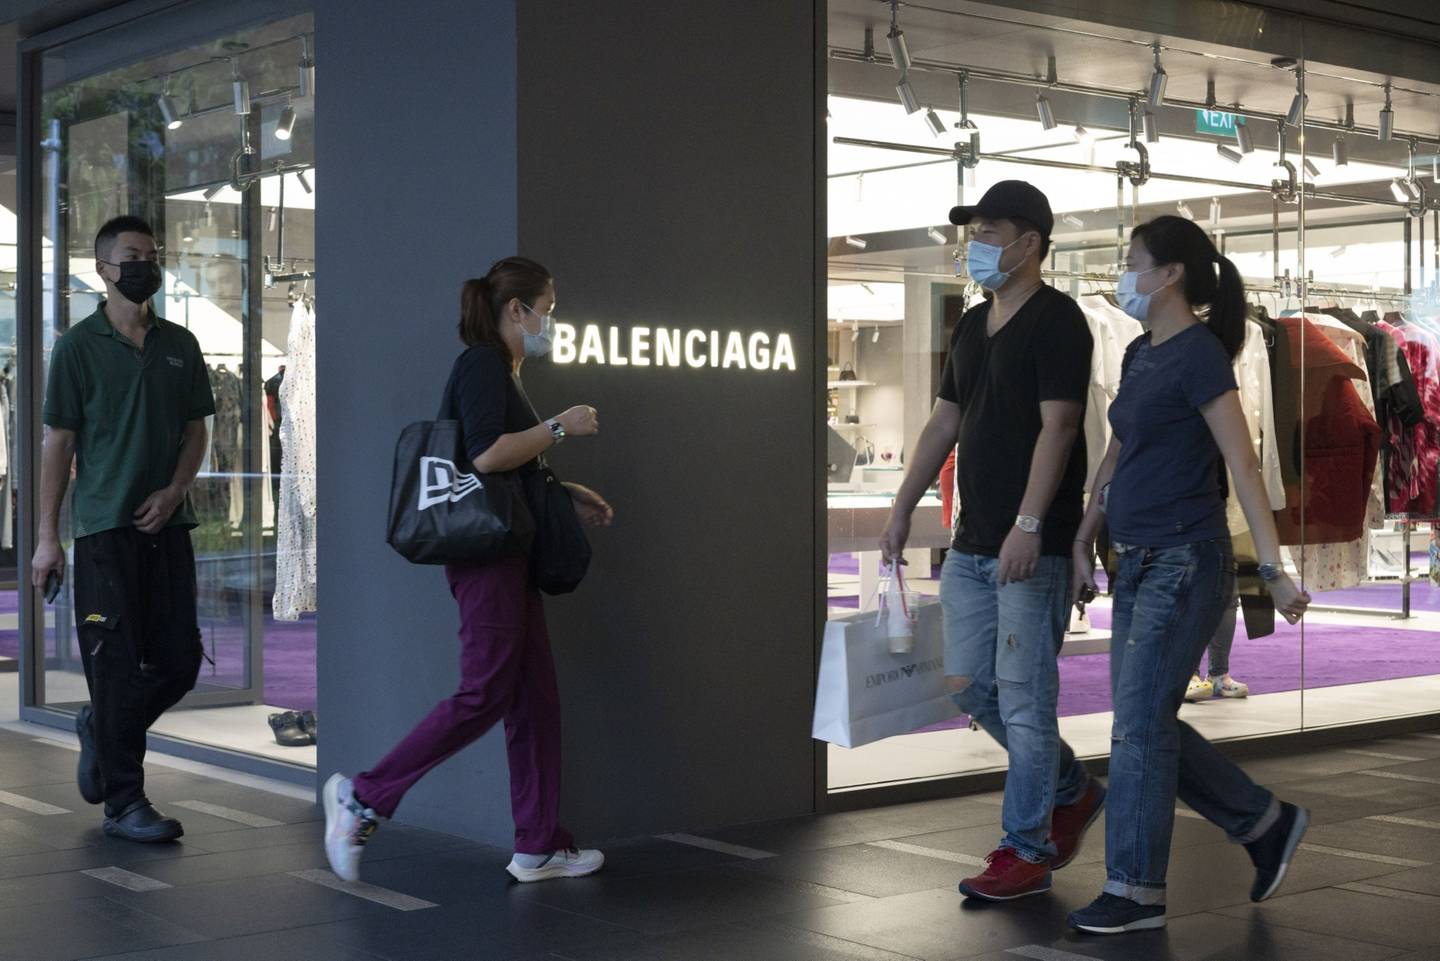 Los compradores pasan por una tienda Balenciaga en Orchard Road en Singapur.